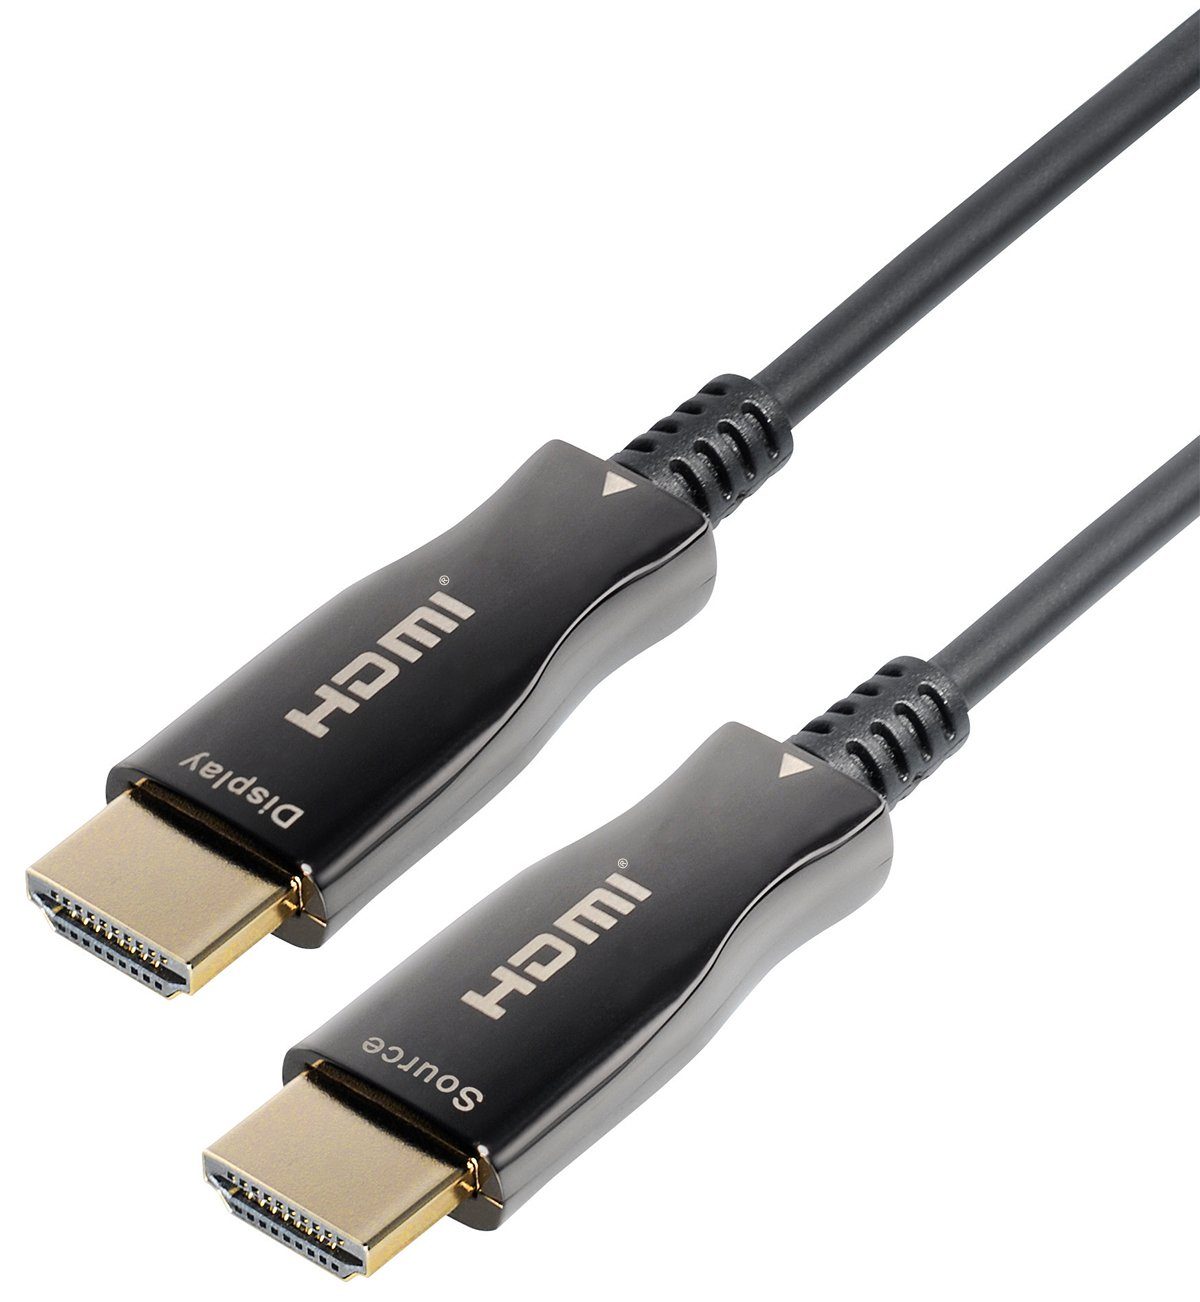 Maxtrack HDMI-Kabel, HDMI, Stecker auf Stecker (1000 cm), Aktives HDMI Glasfaser Kabel | Monitorkabel